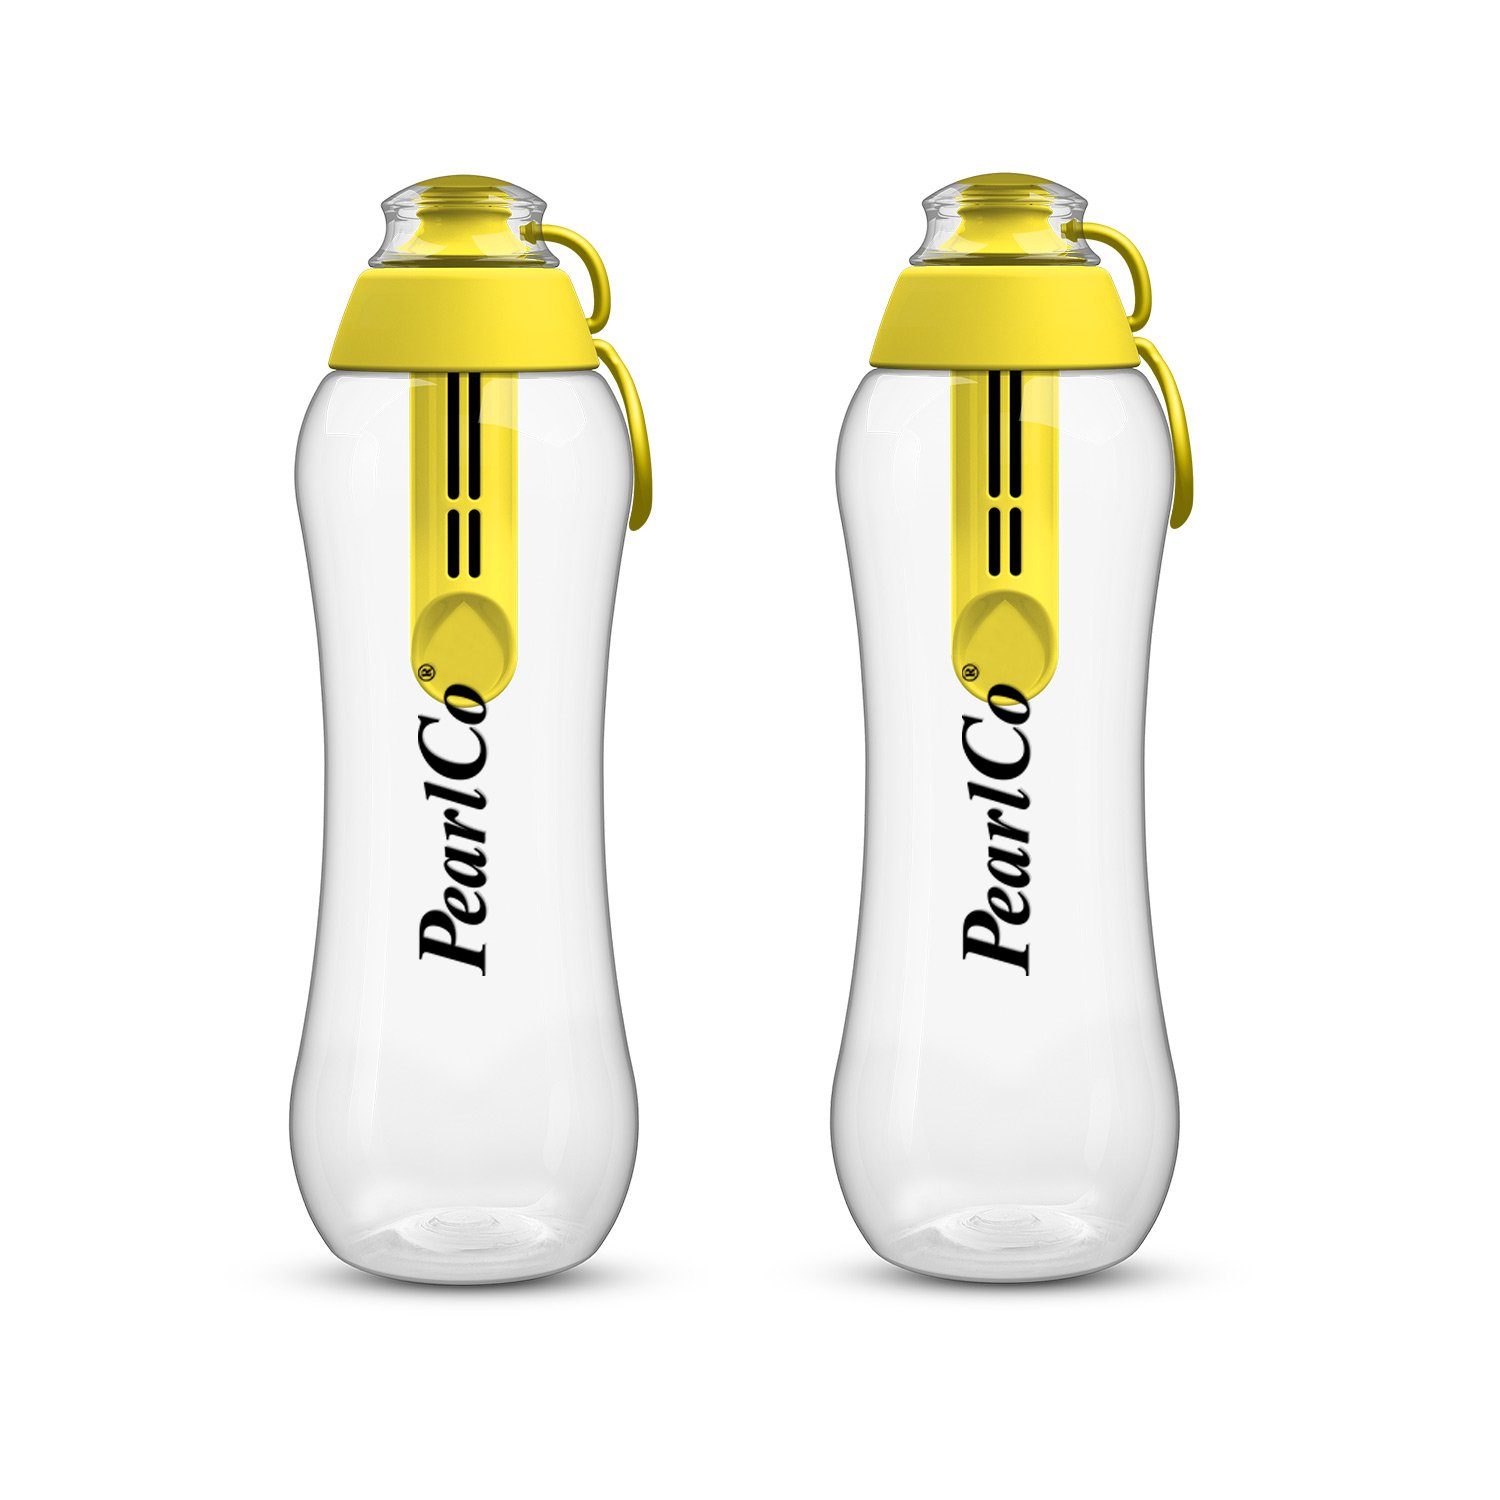 PearlCo Trinkflasche Zwei Filter Trinkflaschen 0,5 Liter gelb mit